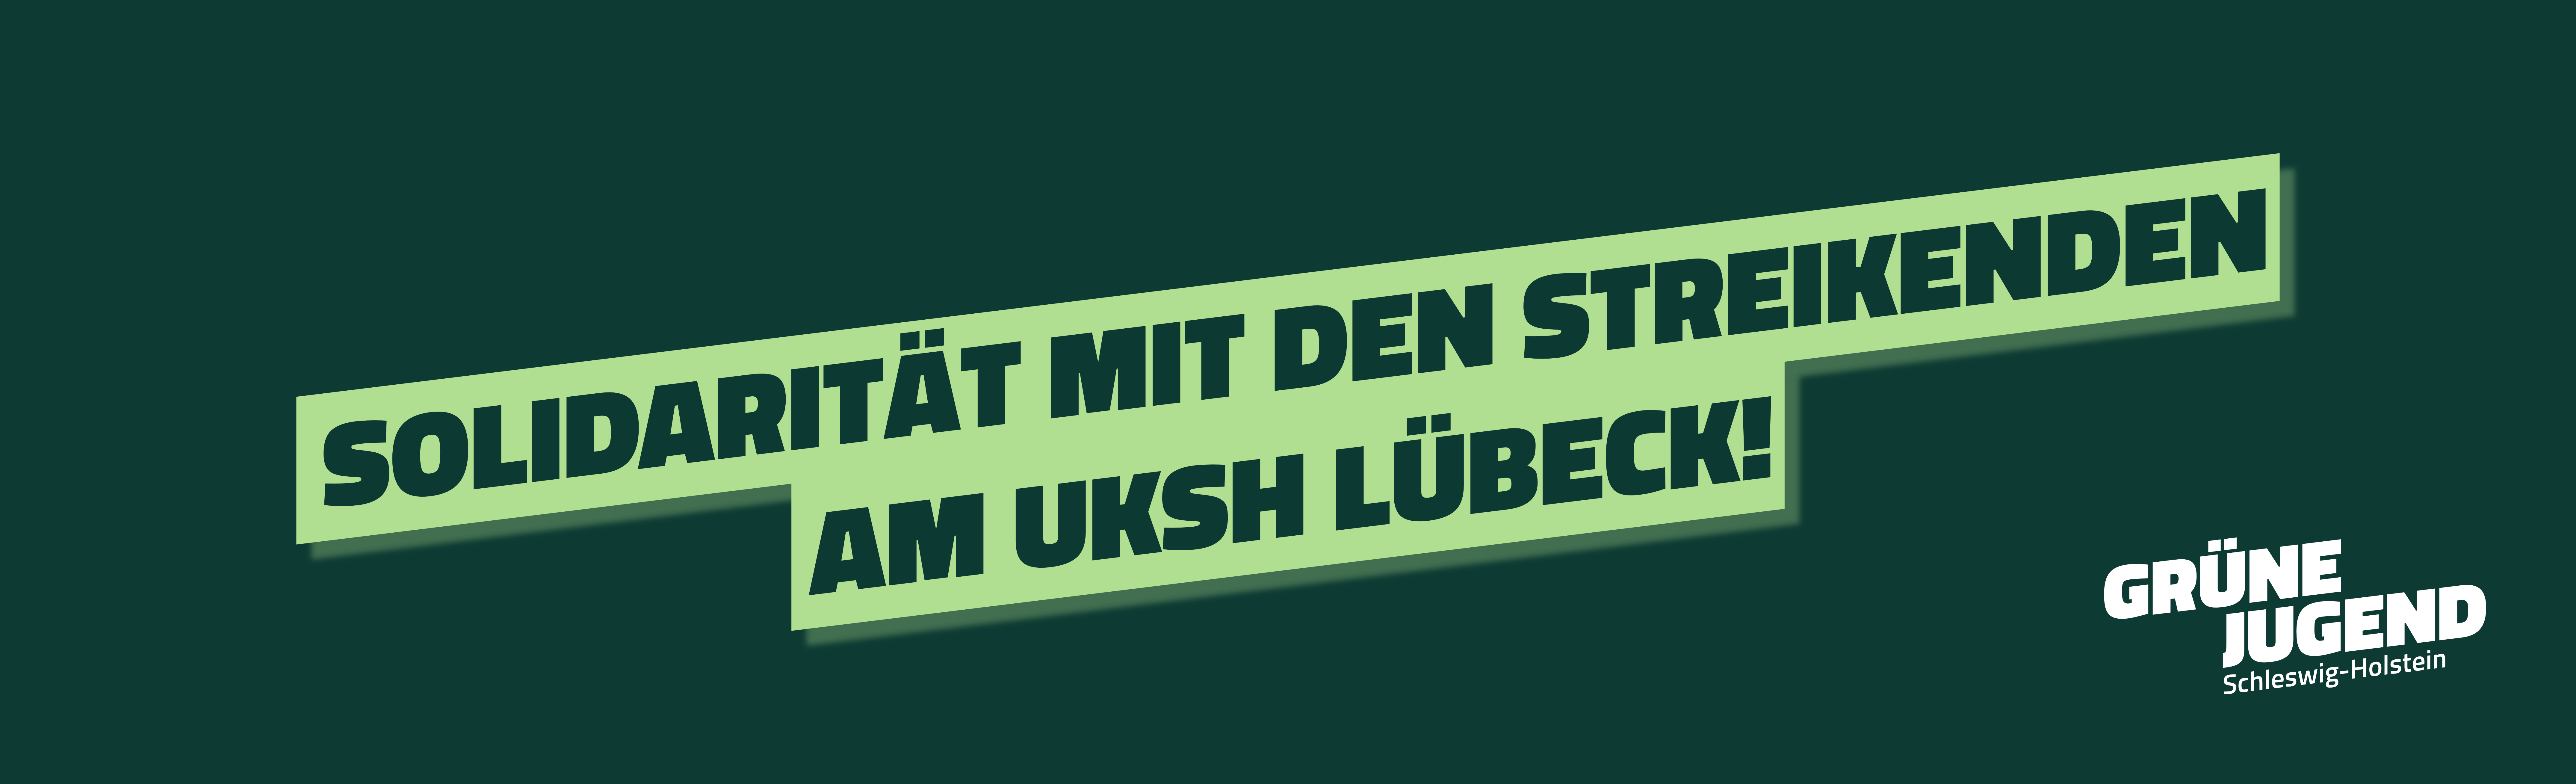 Solidarität mit den Streikenden am UKSH Lübeck! GRÜNE JUGEND steht an der Seite der Beschäftigten.